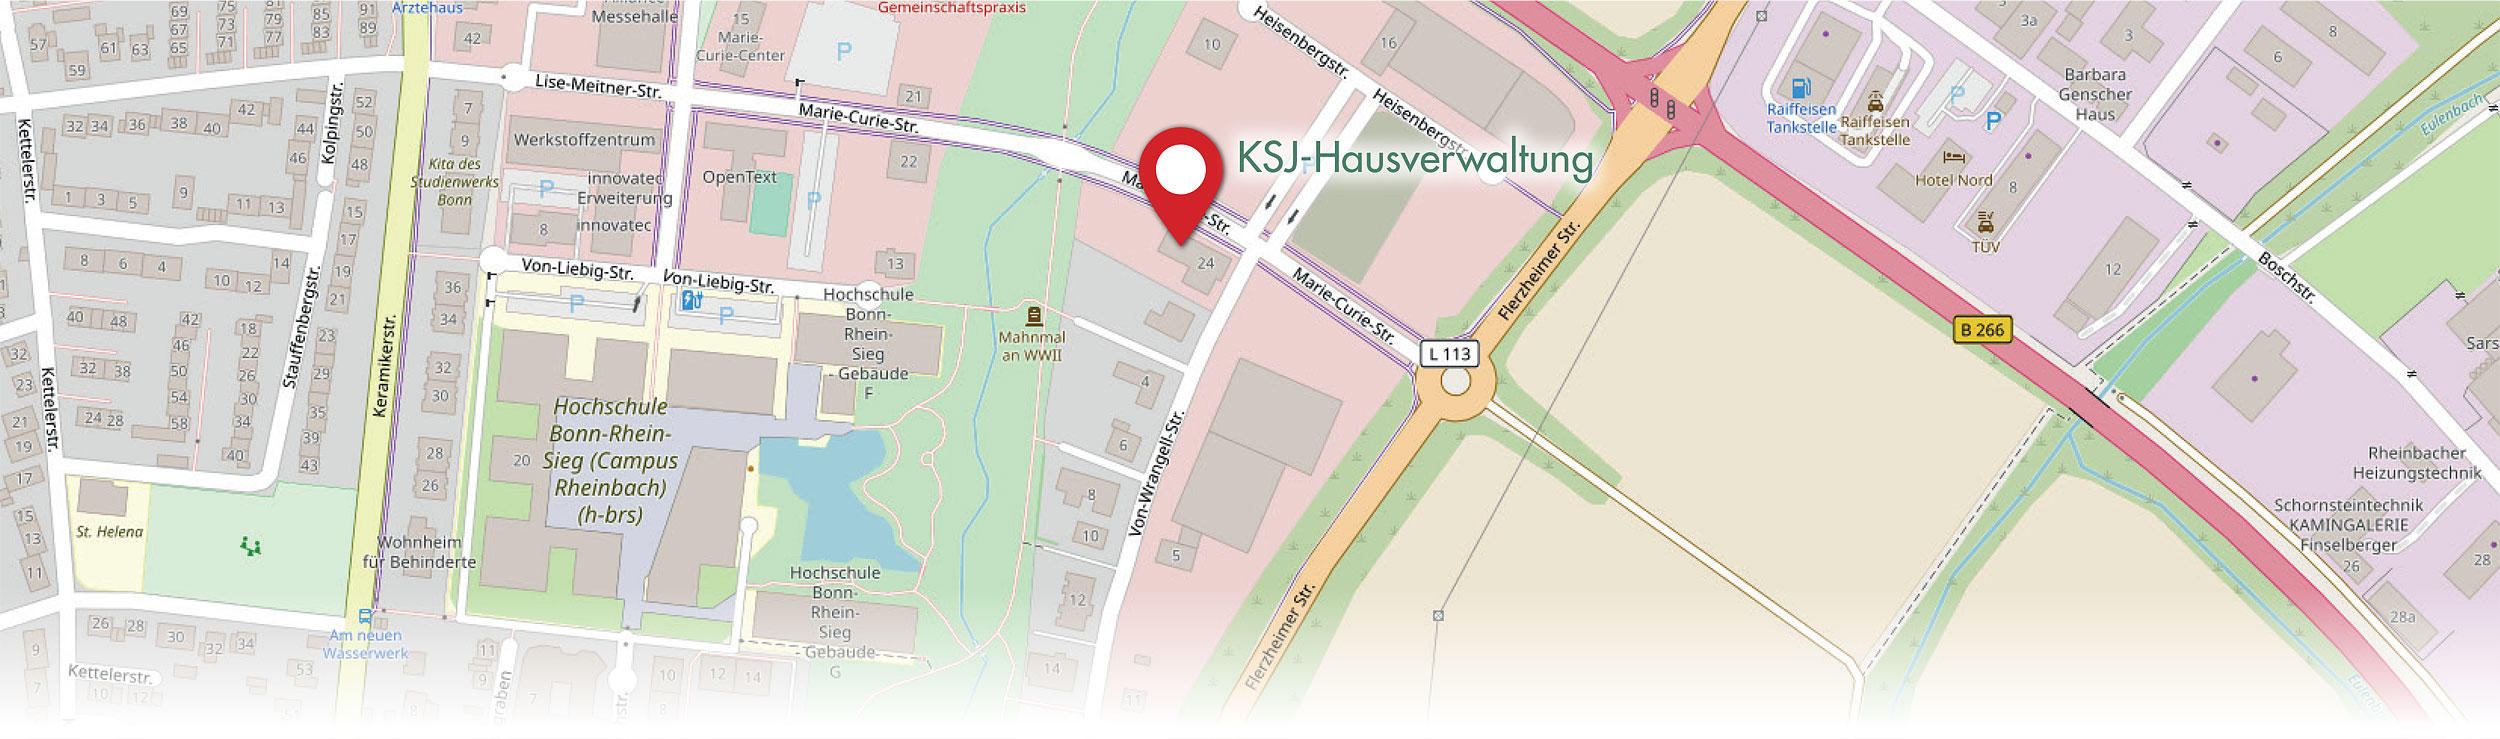 Kontakt - KSJ-Hausverwaltung, Rheinbach